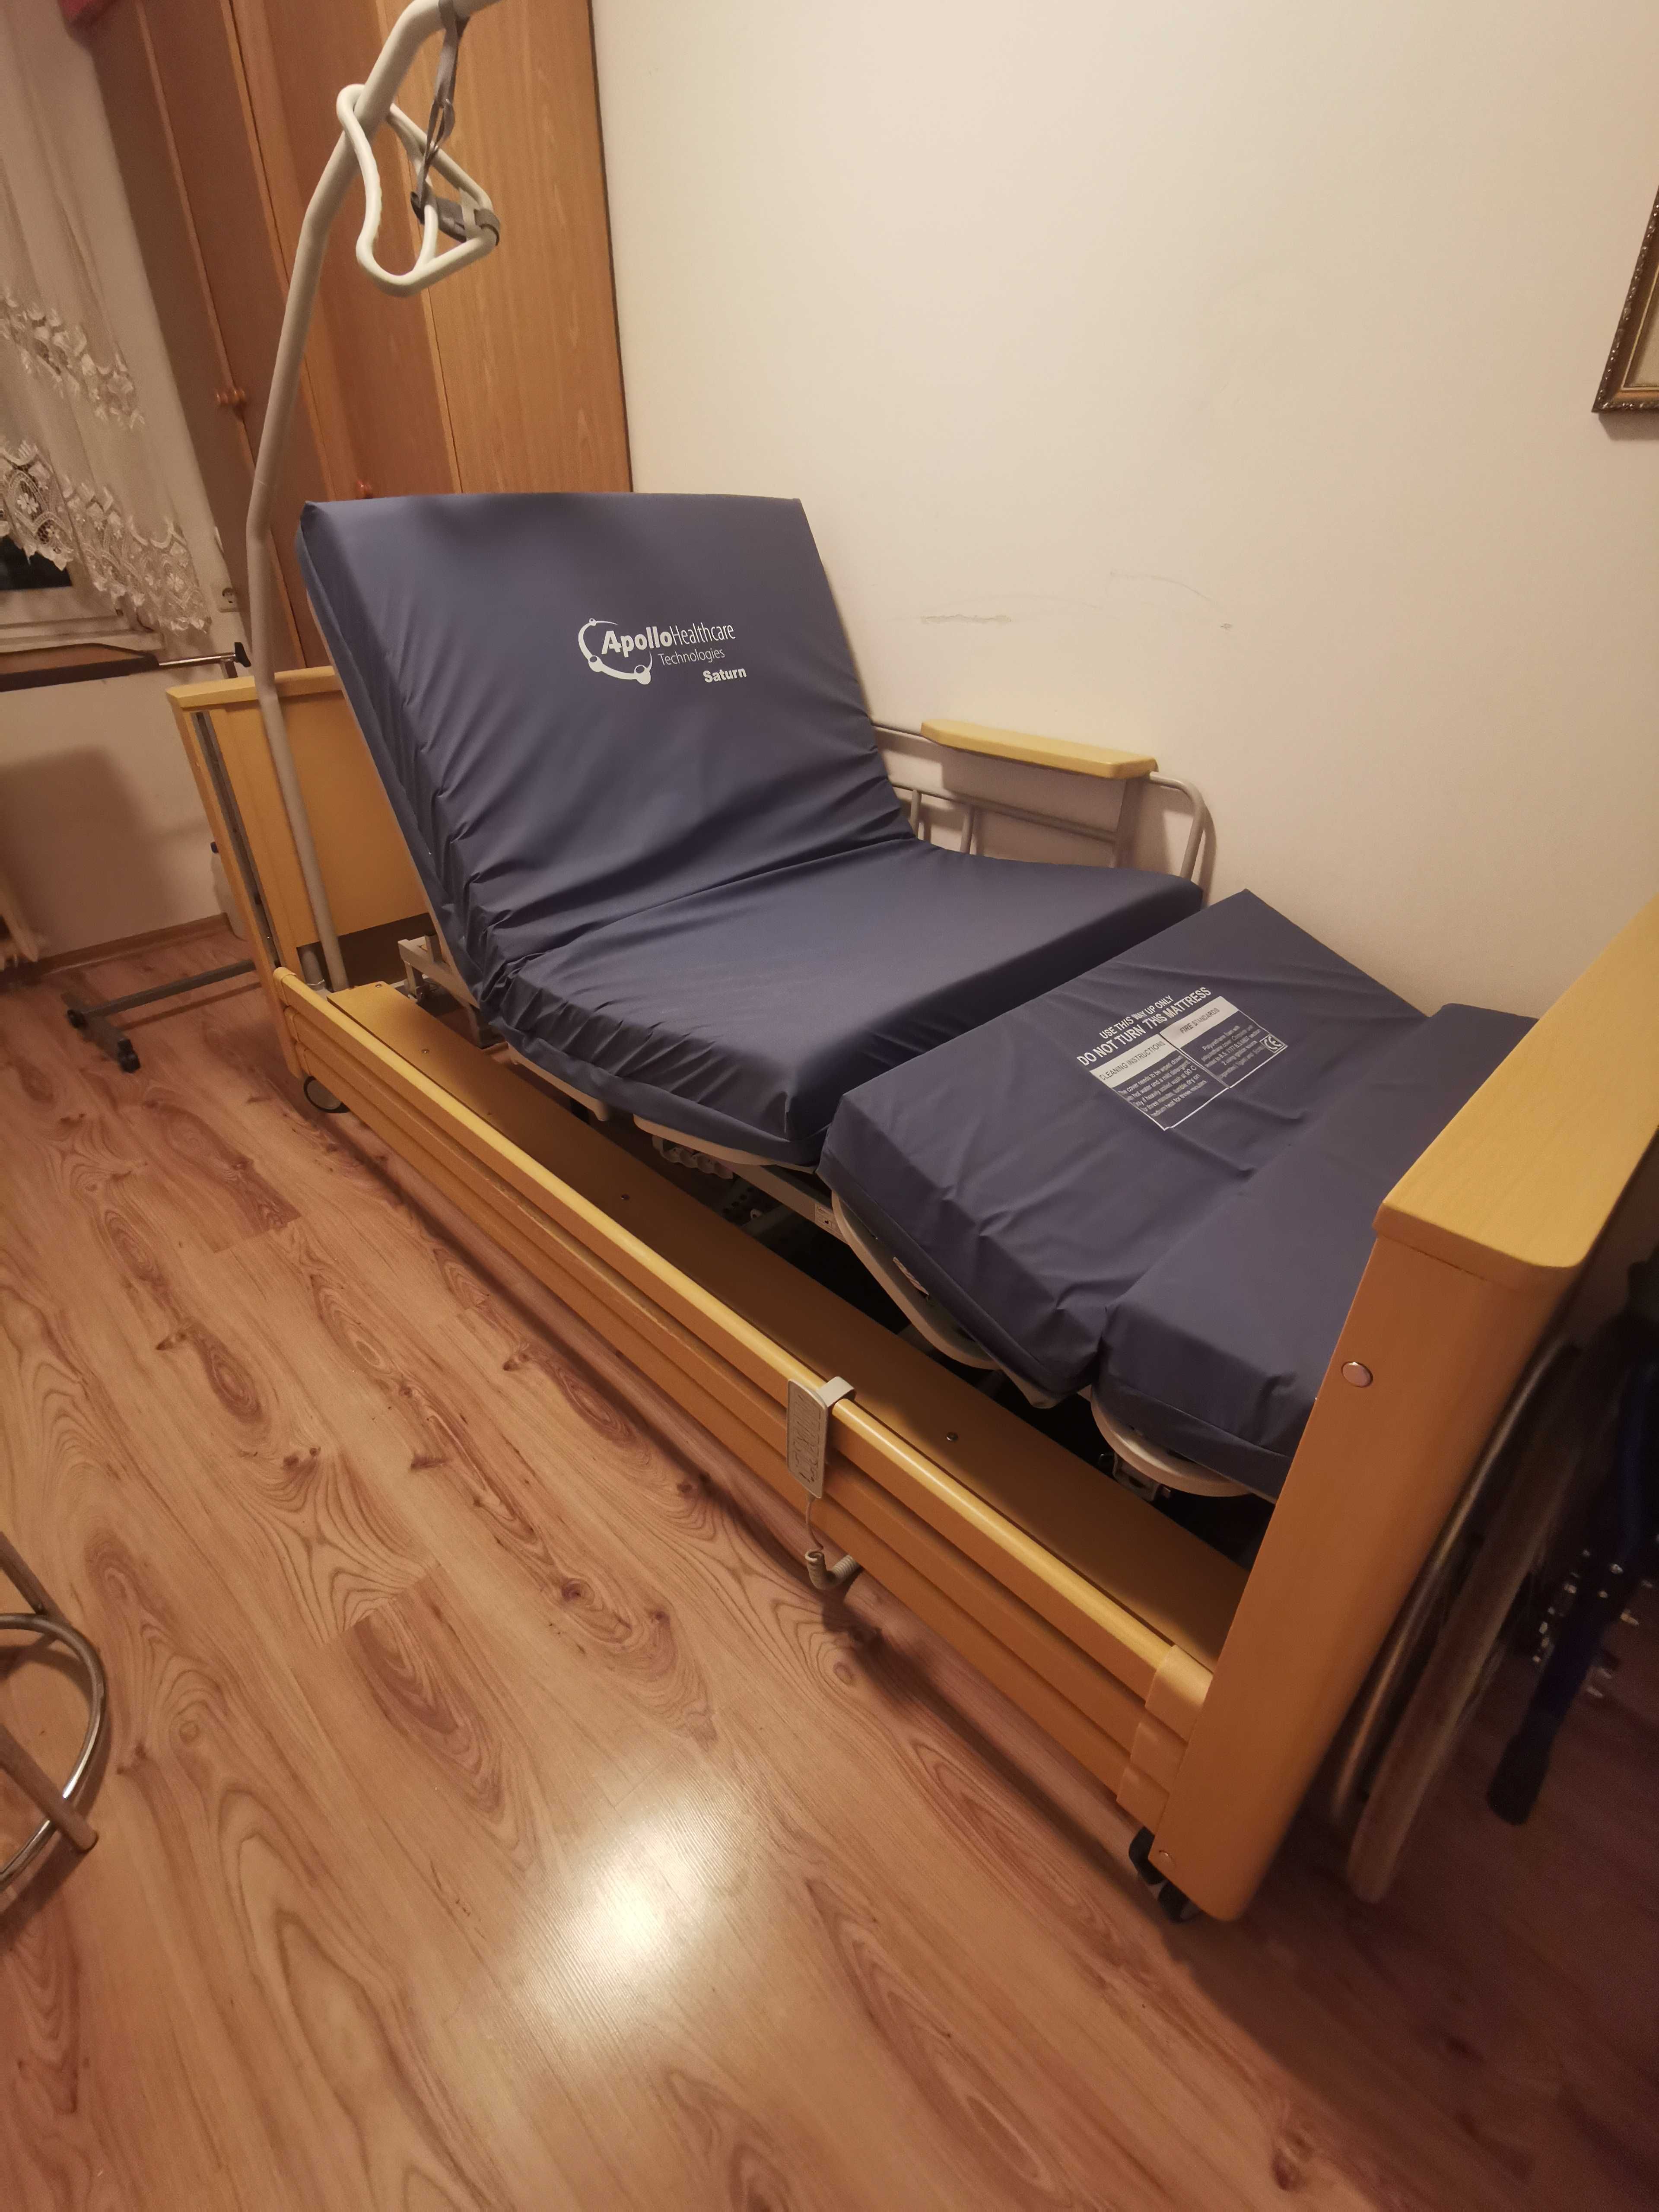 Łóżko rehabilitacyjne APOLLO Saturn z funkcją pionizacji i fotela.